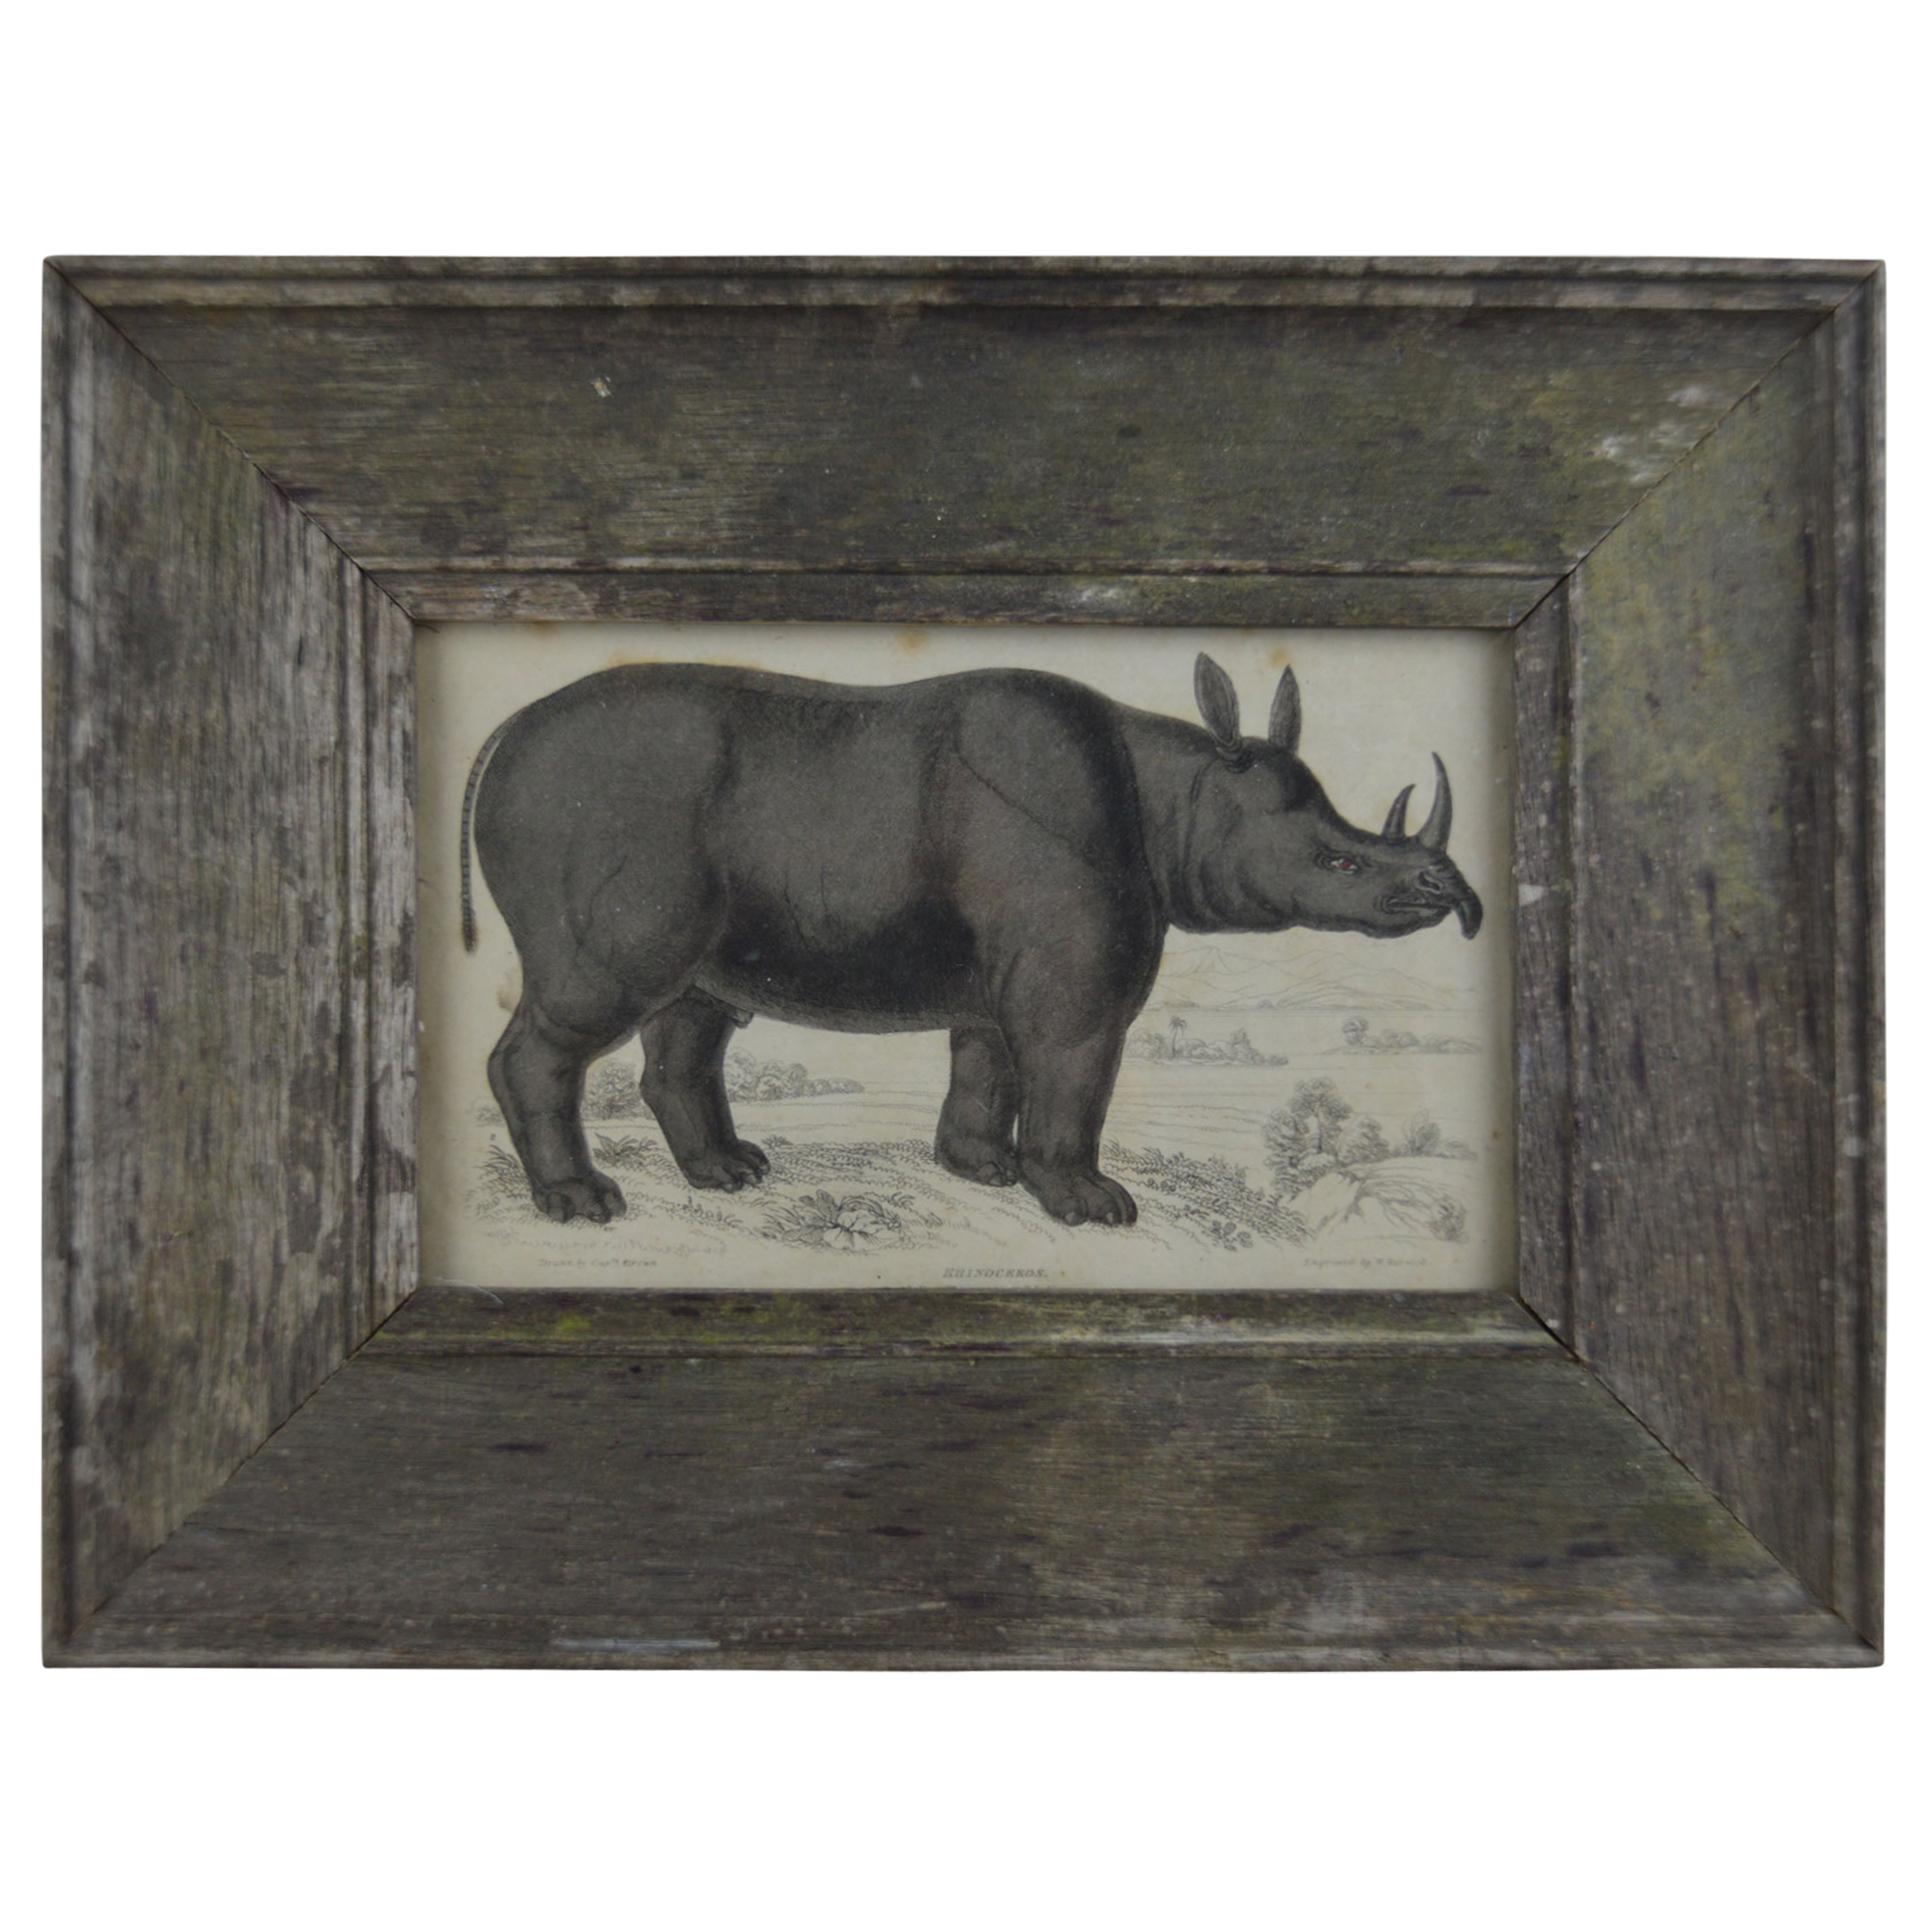 Original Antique Print of a Rhinoceros, 1830s